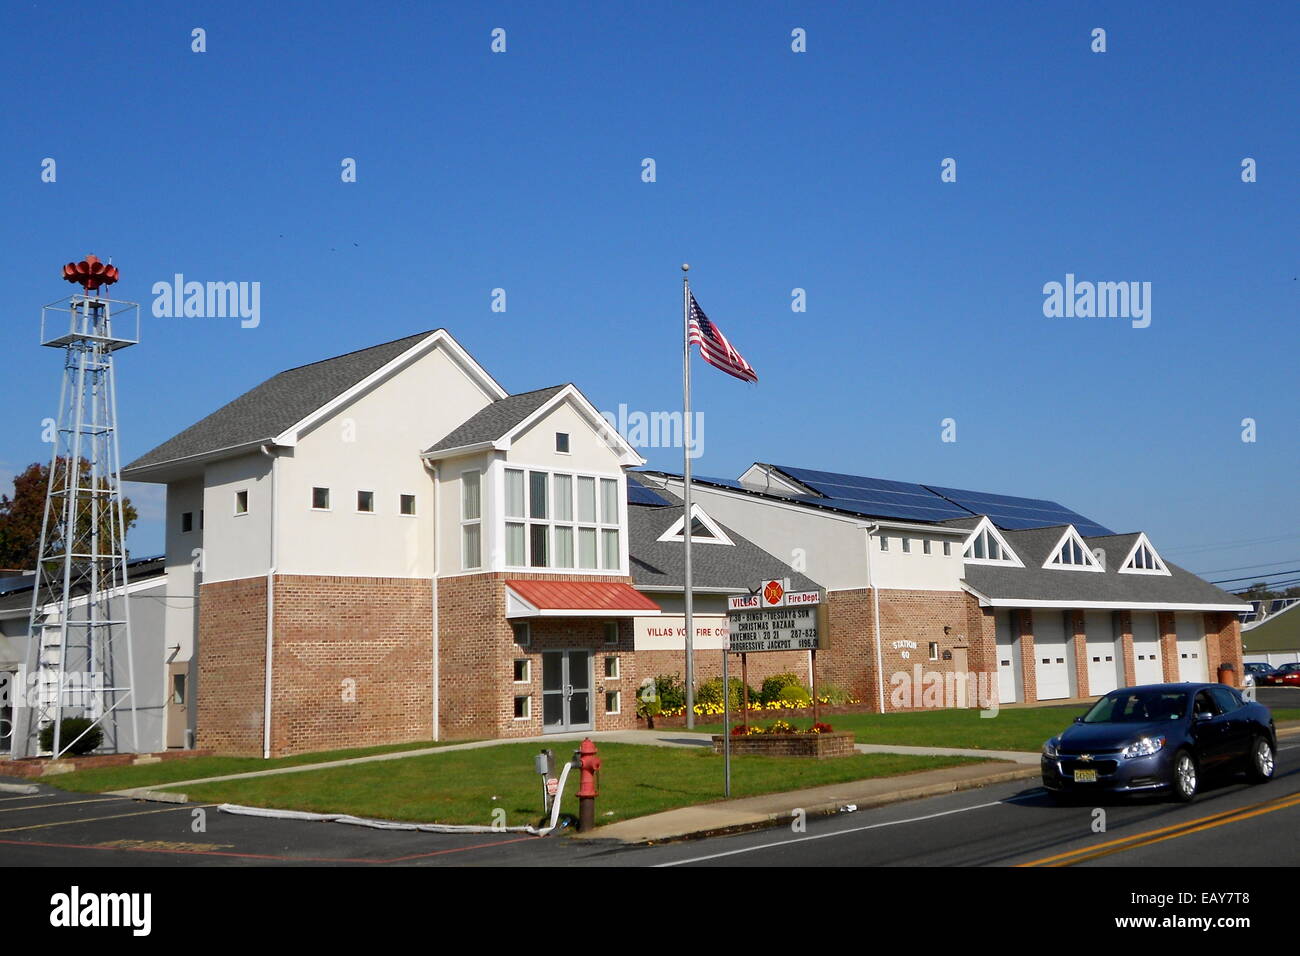 Villas Bomberos en Villas, Bajar Township, condado de Cape May, Nueva Jersey Foto de stock